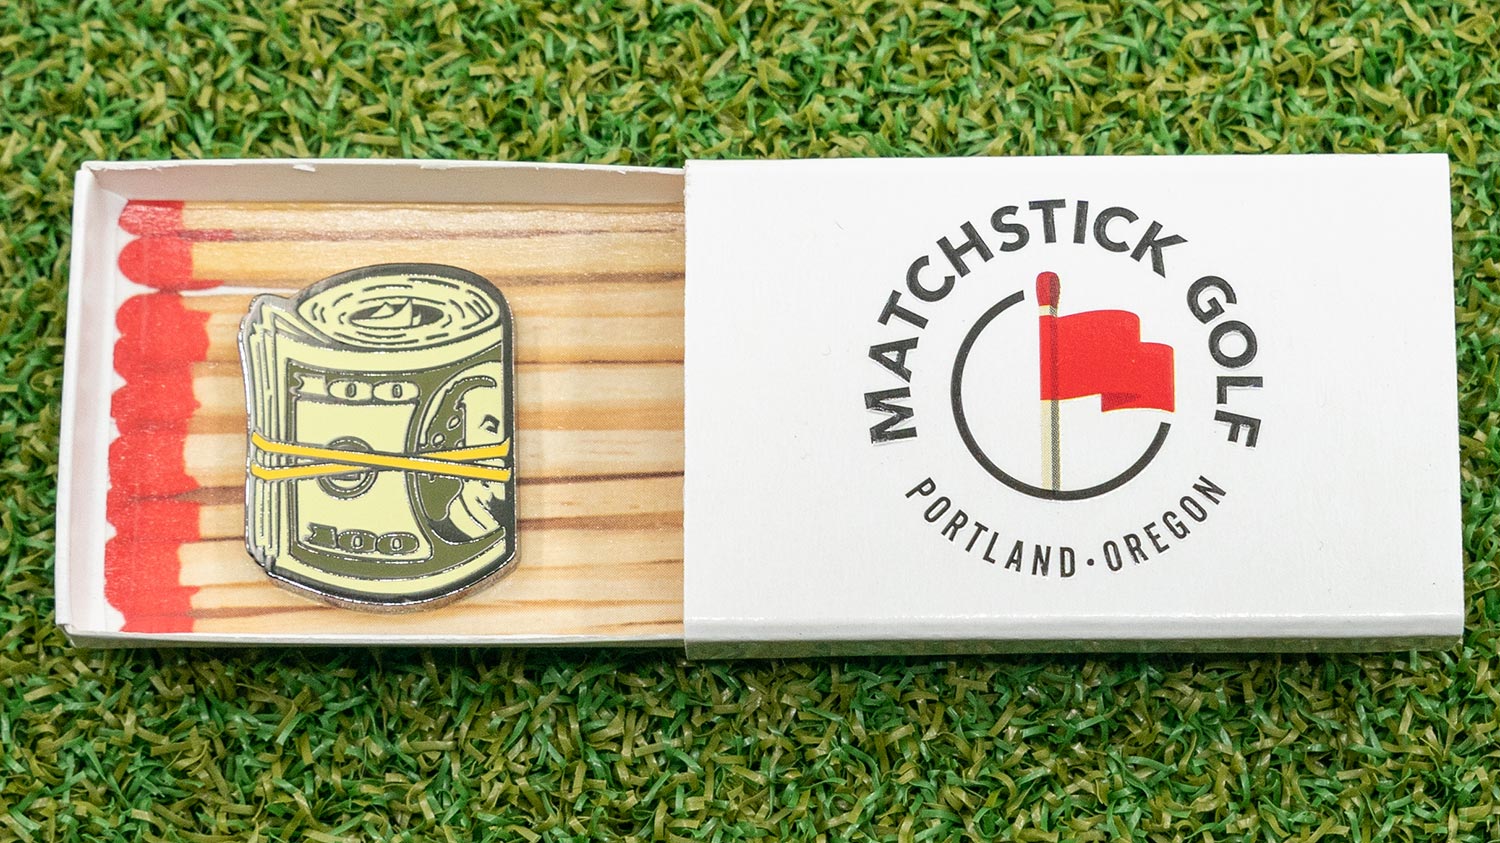 cash roll golf ball marker matchbox packaging